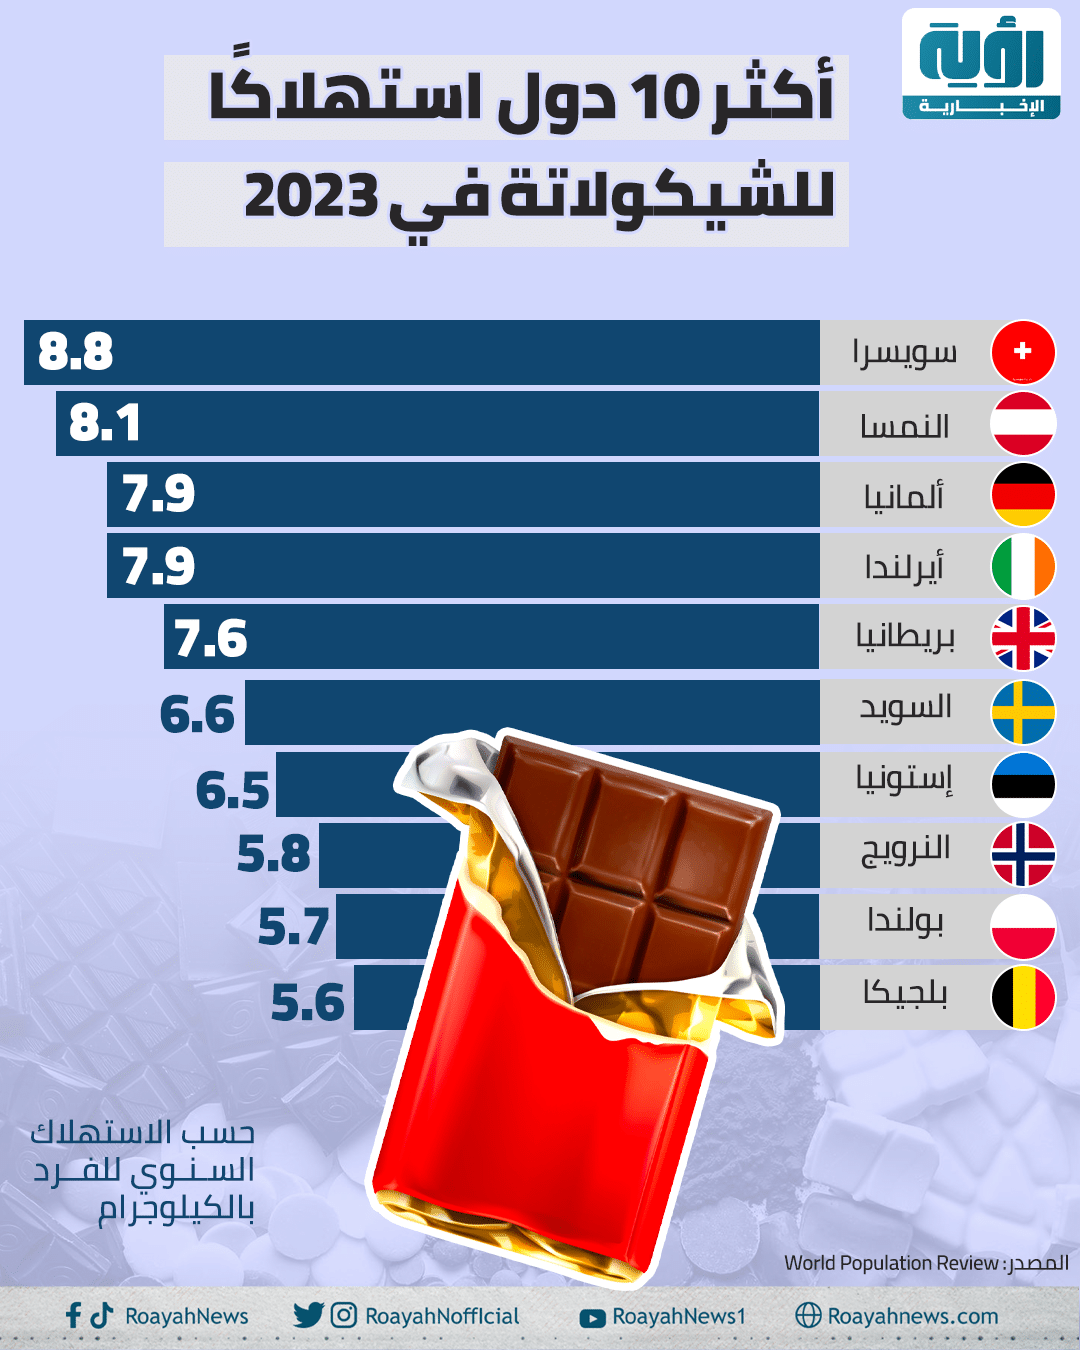 إنفوجراف| أكثر 10 دول استهلاكًا للشيكولاتة في 2023